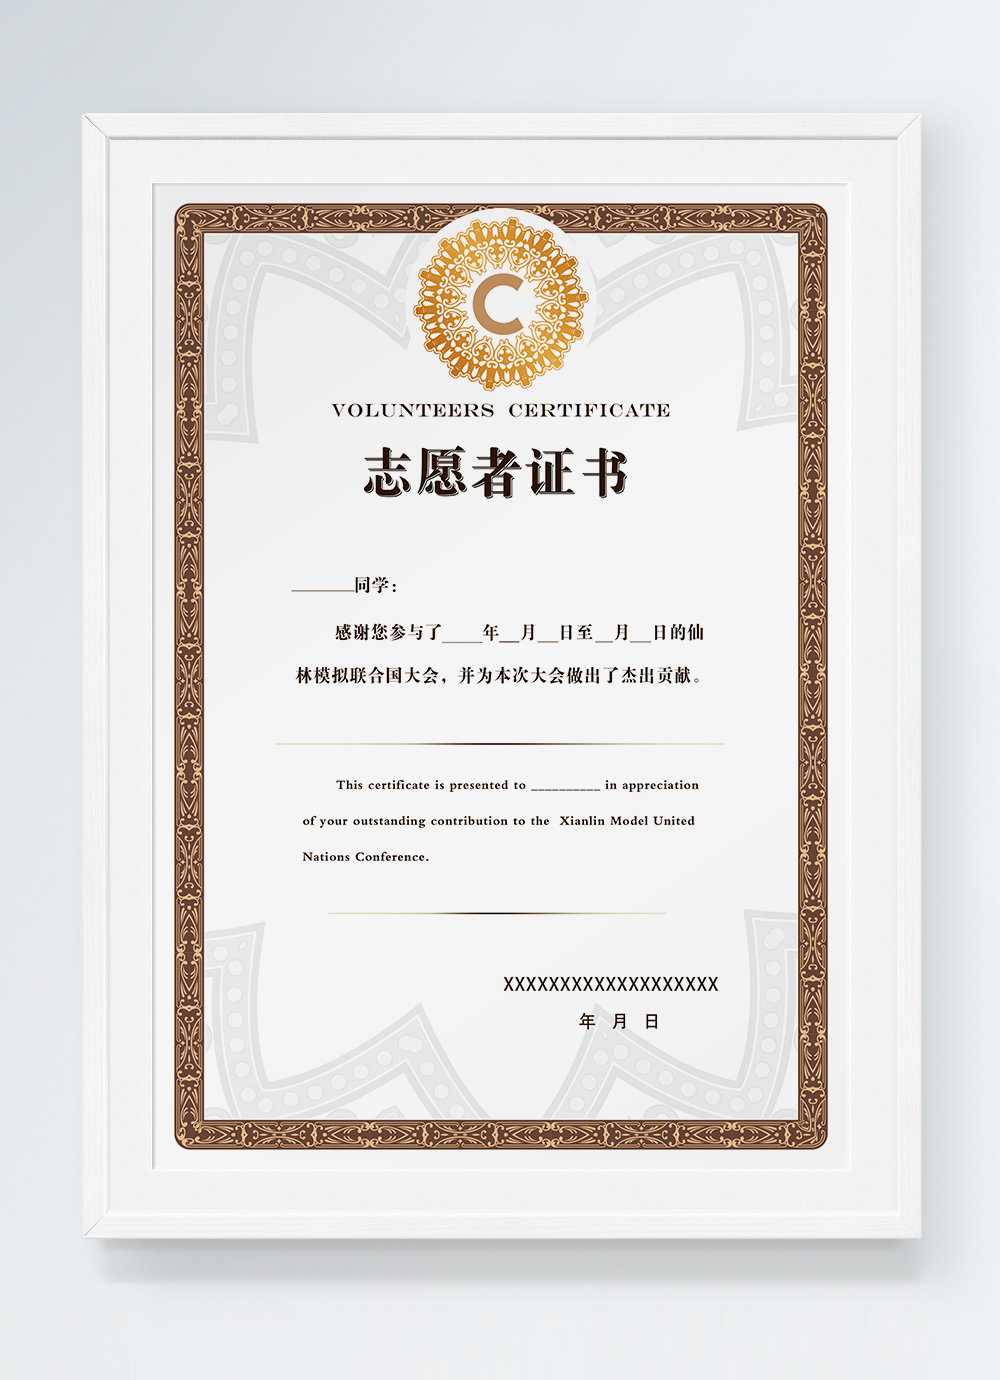 Golden glorious volunteer certificate template image_picture free Within Volunteer Certificate Templates